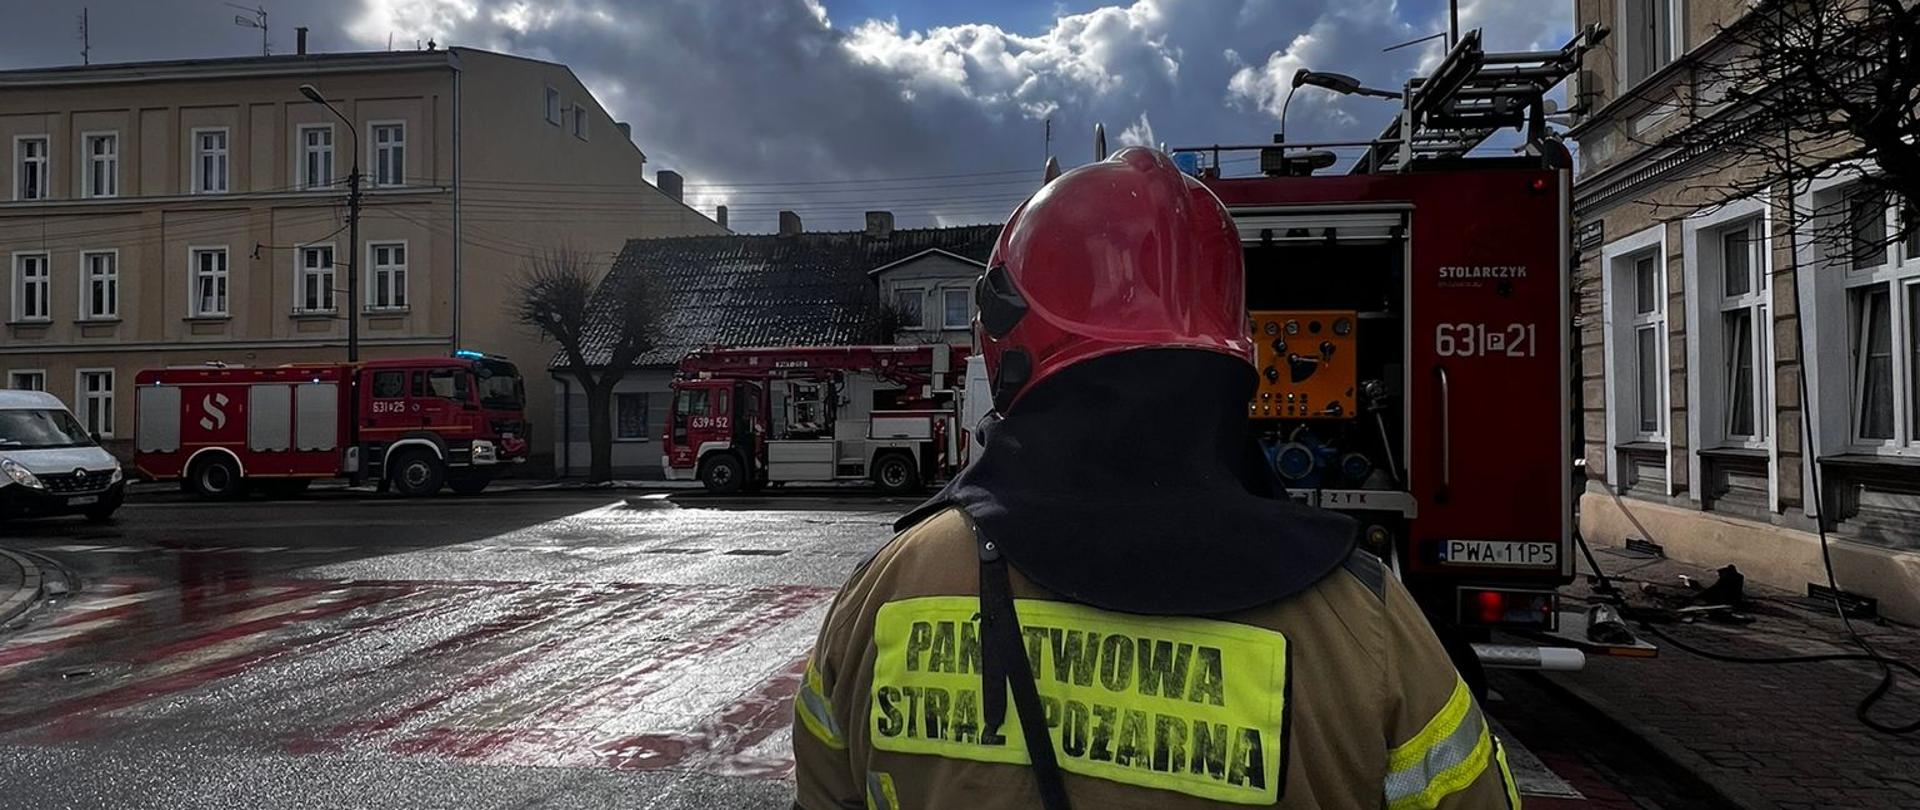 Pożar w mieszkaniu na J. Pawła w Wągrowcu 